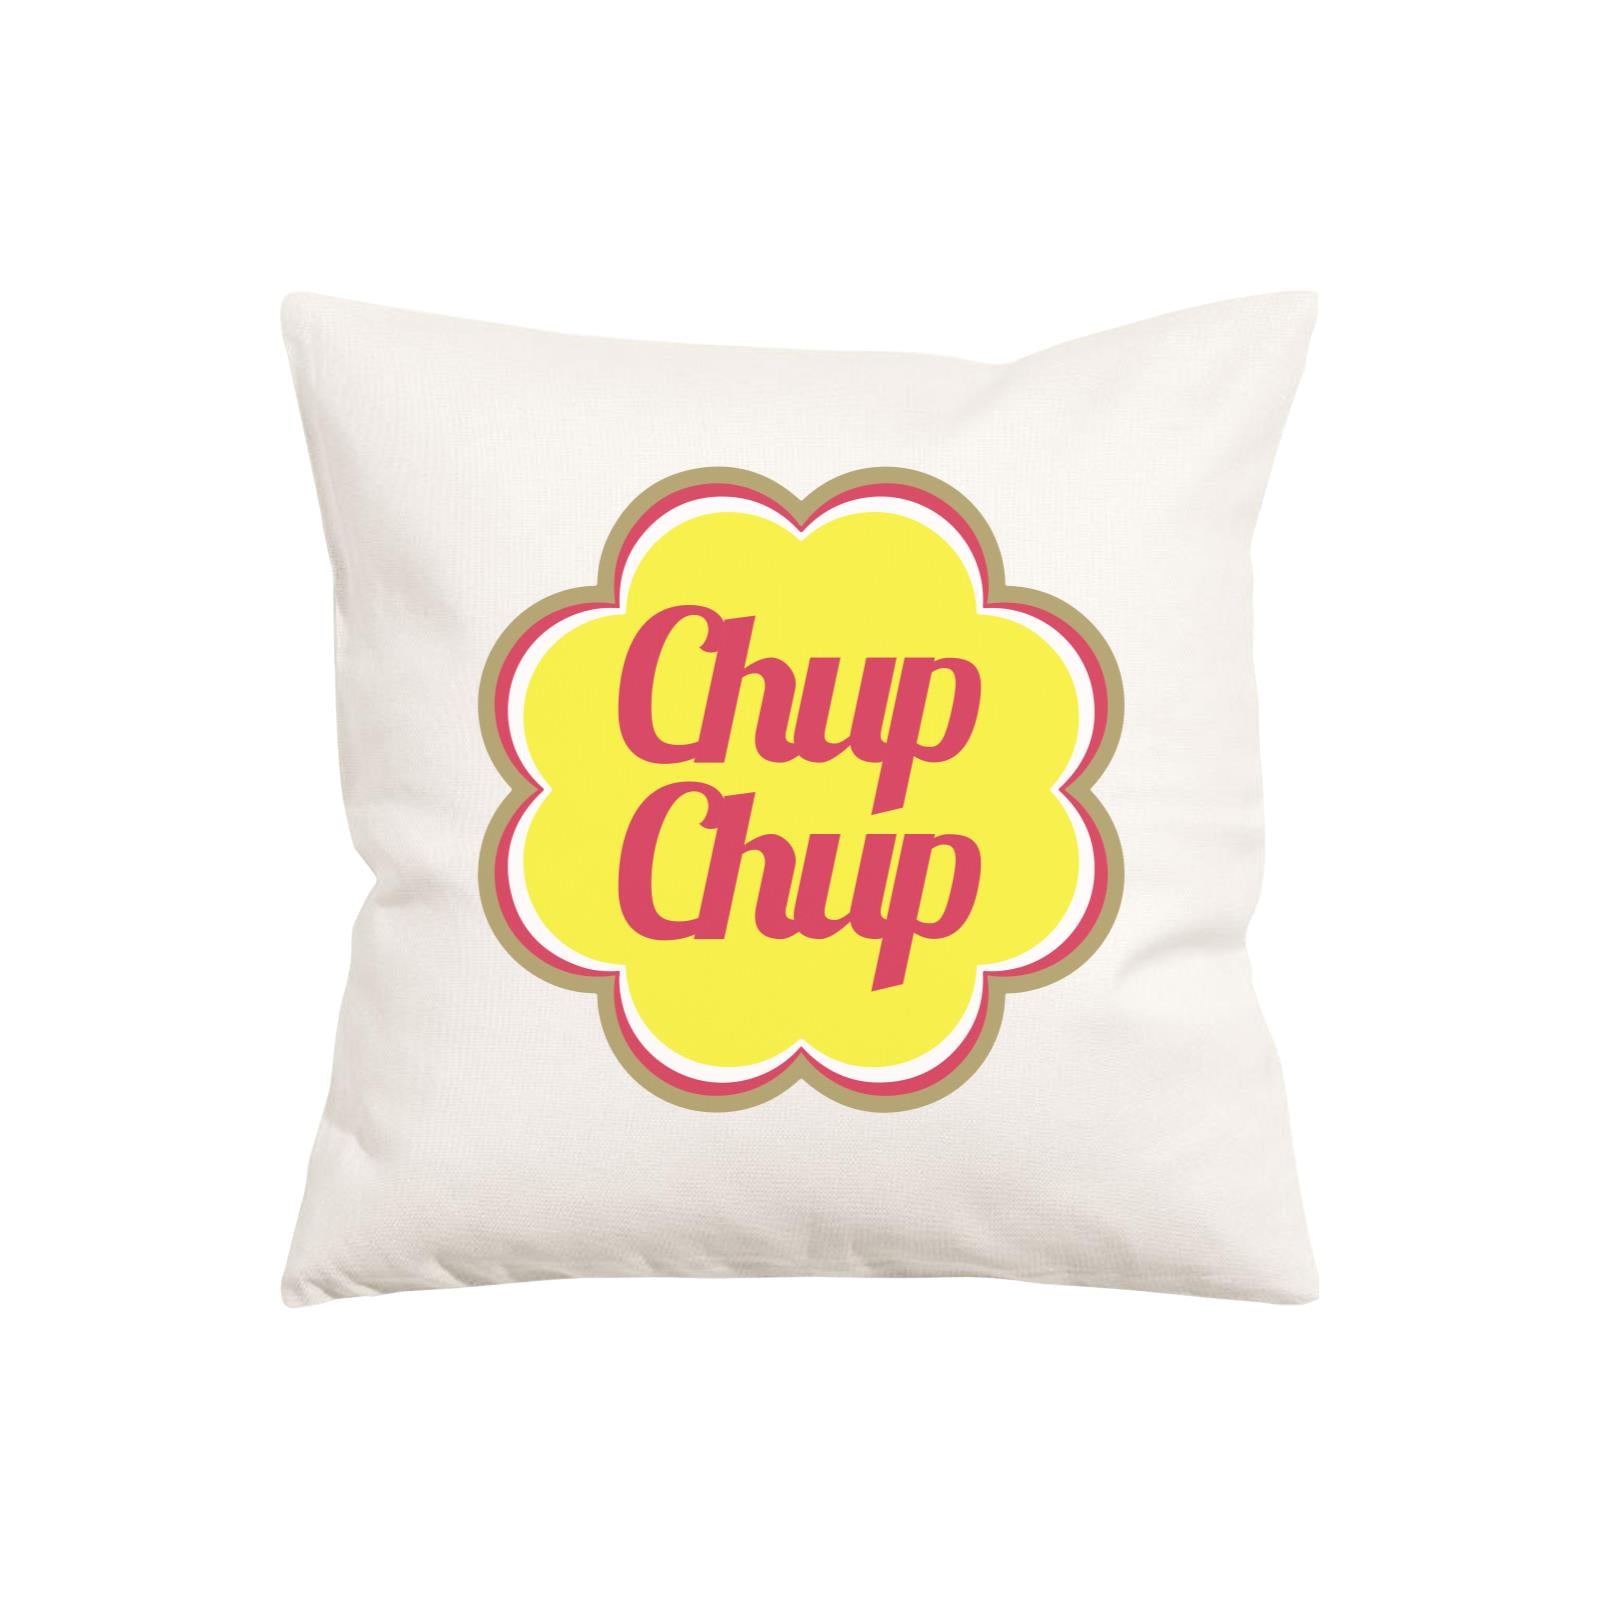 Slang Statement Chup Chup Pillow Cushion